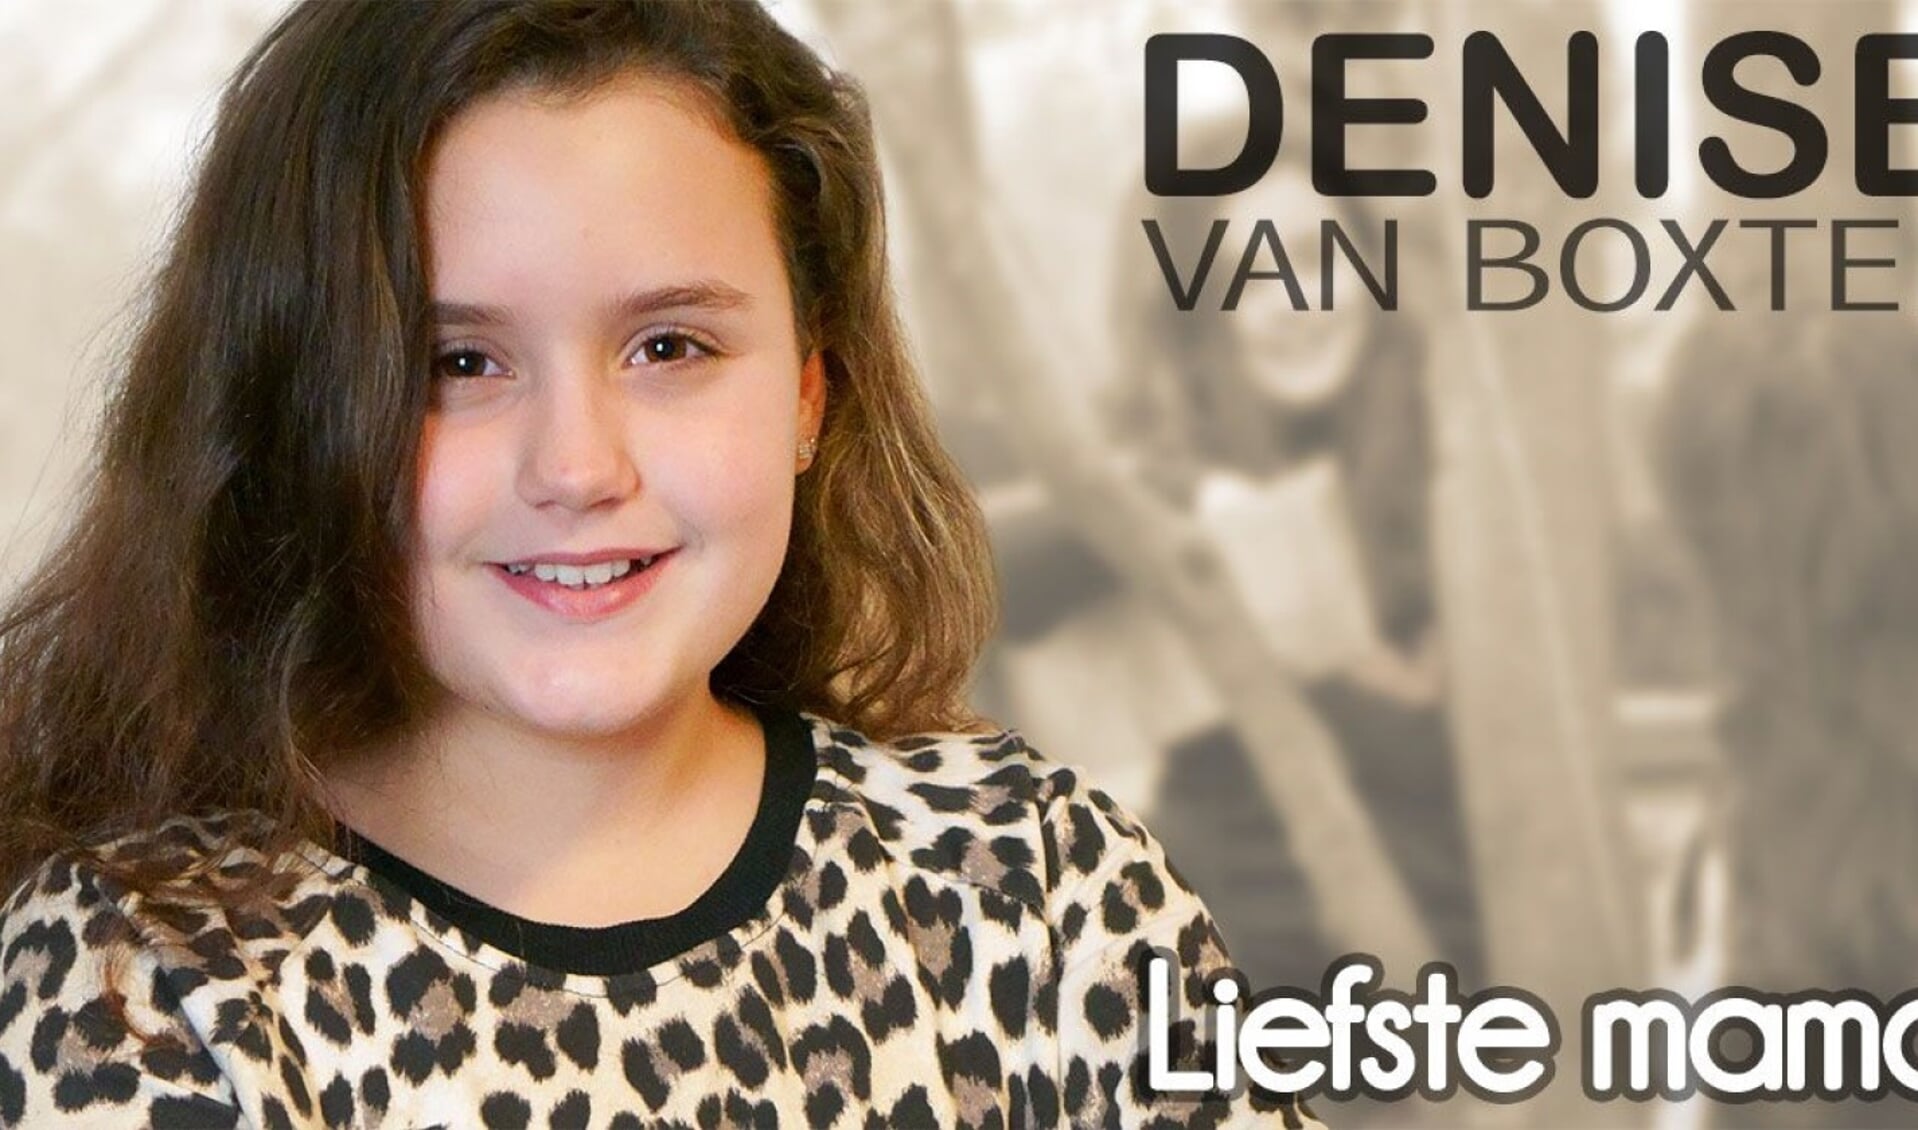 • De persfoto van Denise van Boxtel.